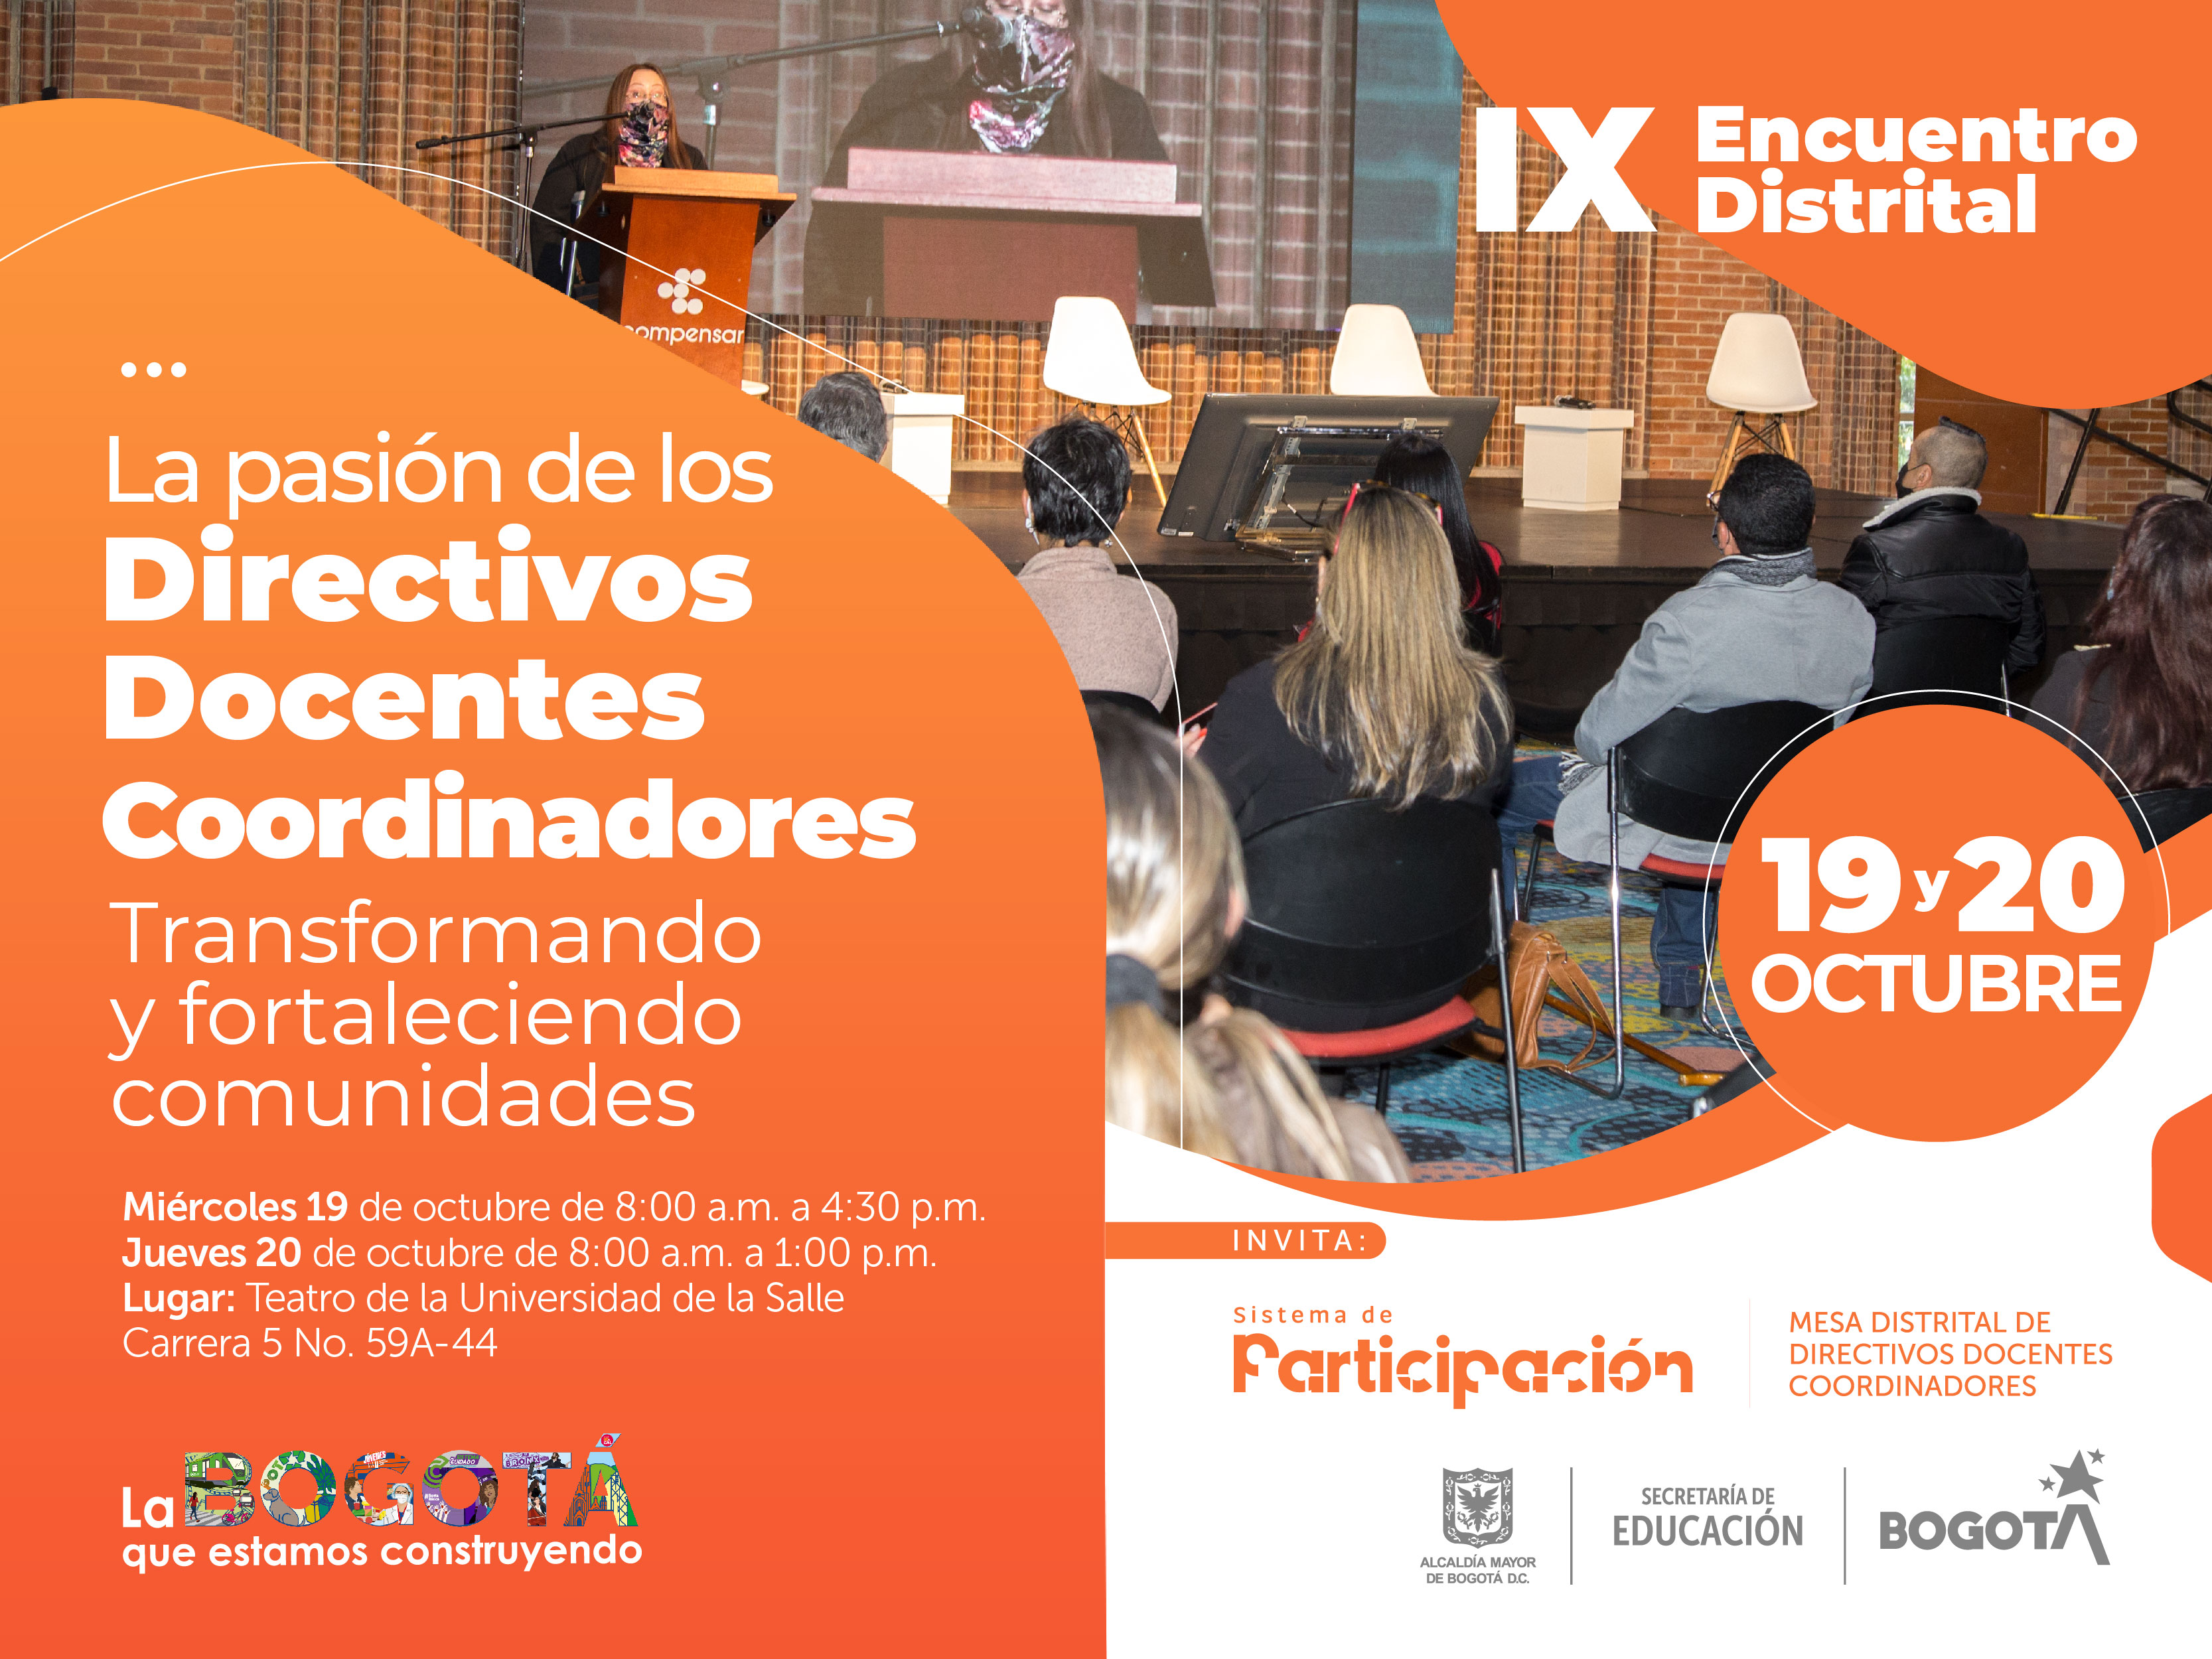 Ya viene el IX Encuentro Distrital de directivos docentes y coordinadores